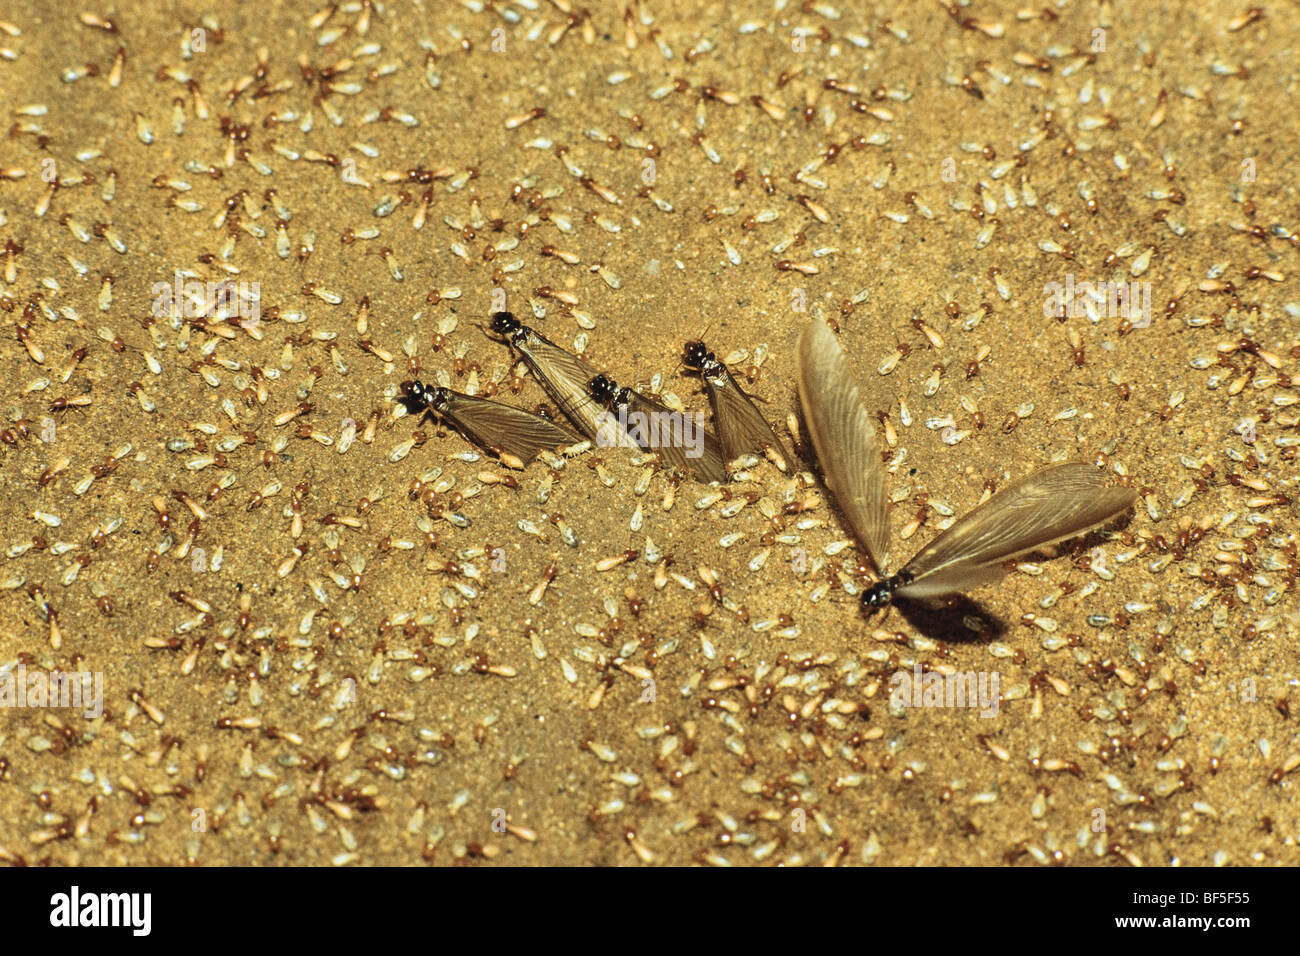 Termites (Isoptera) swarming, rainforest, South India, Asia Stock Photo